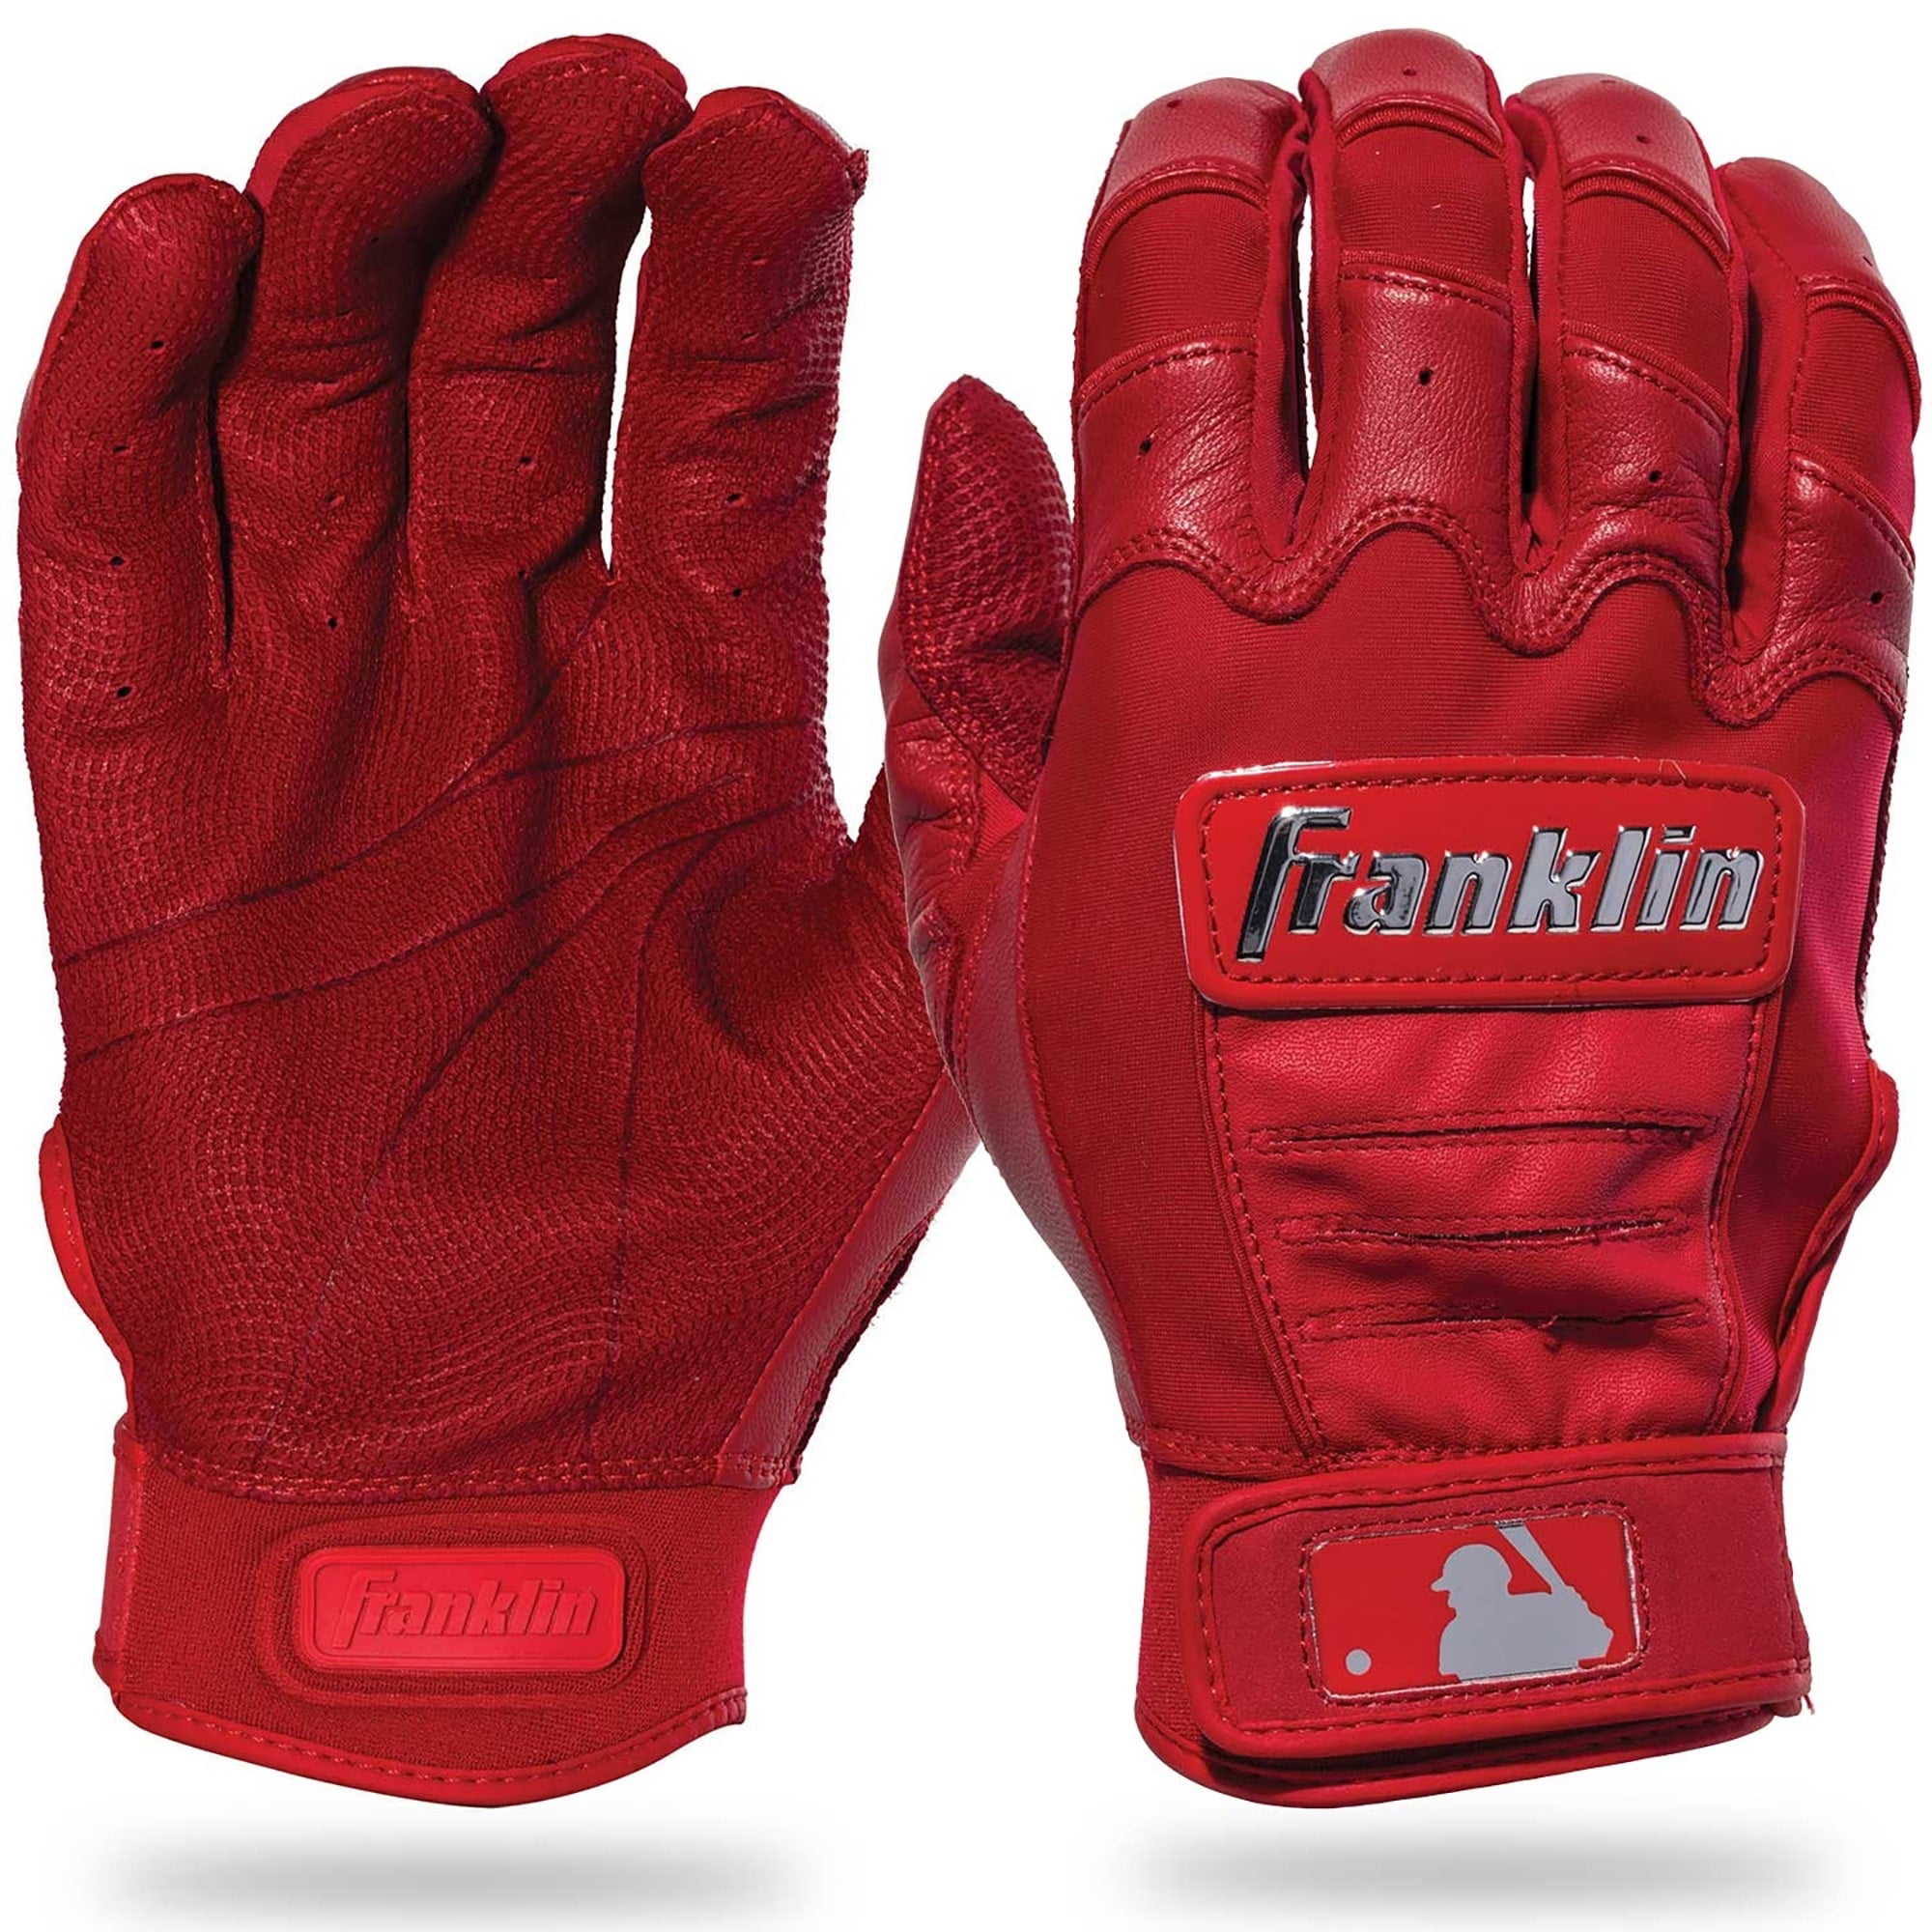 Franklin CFX Pro Full Color Chrome Batting Gloves Pair 